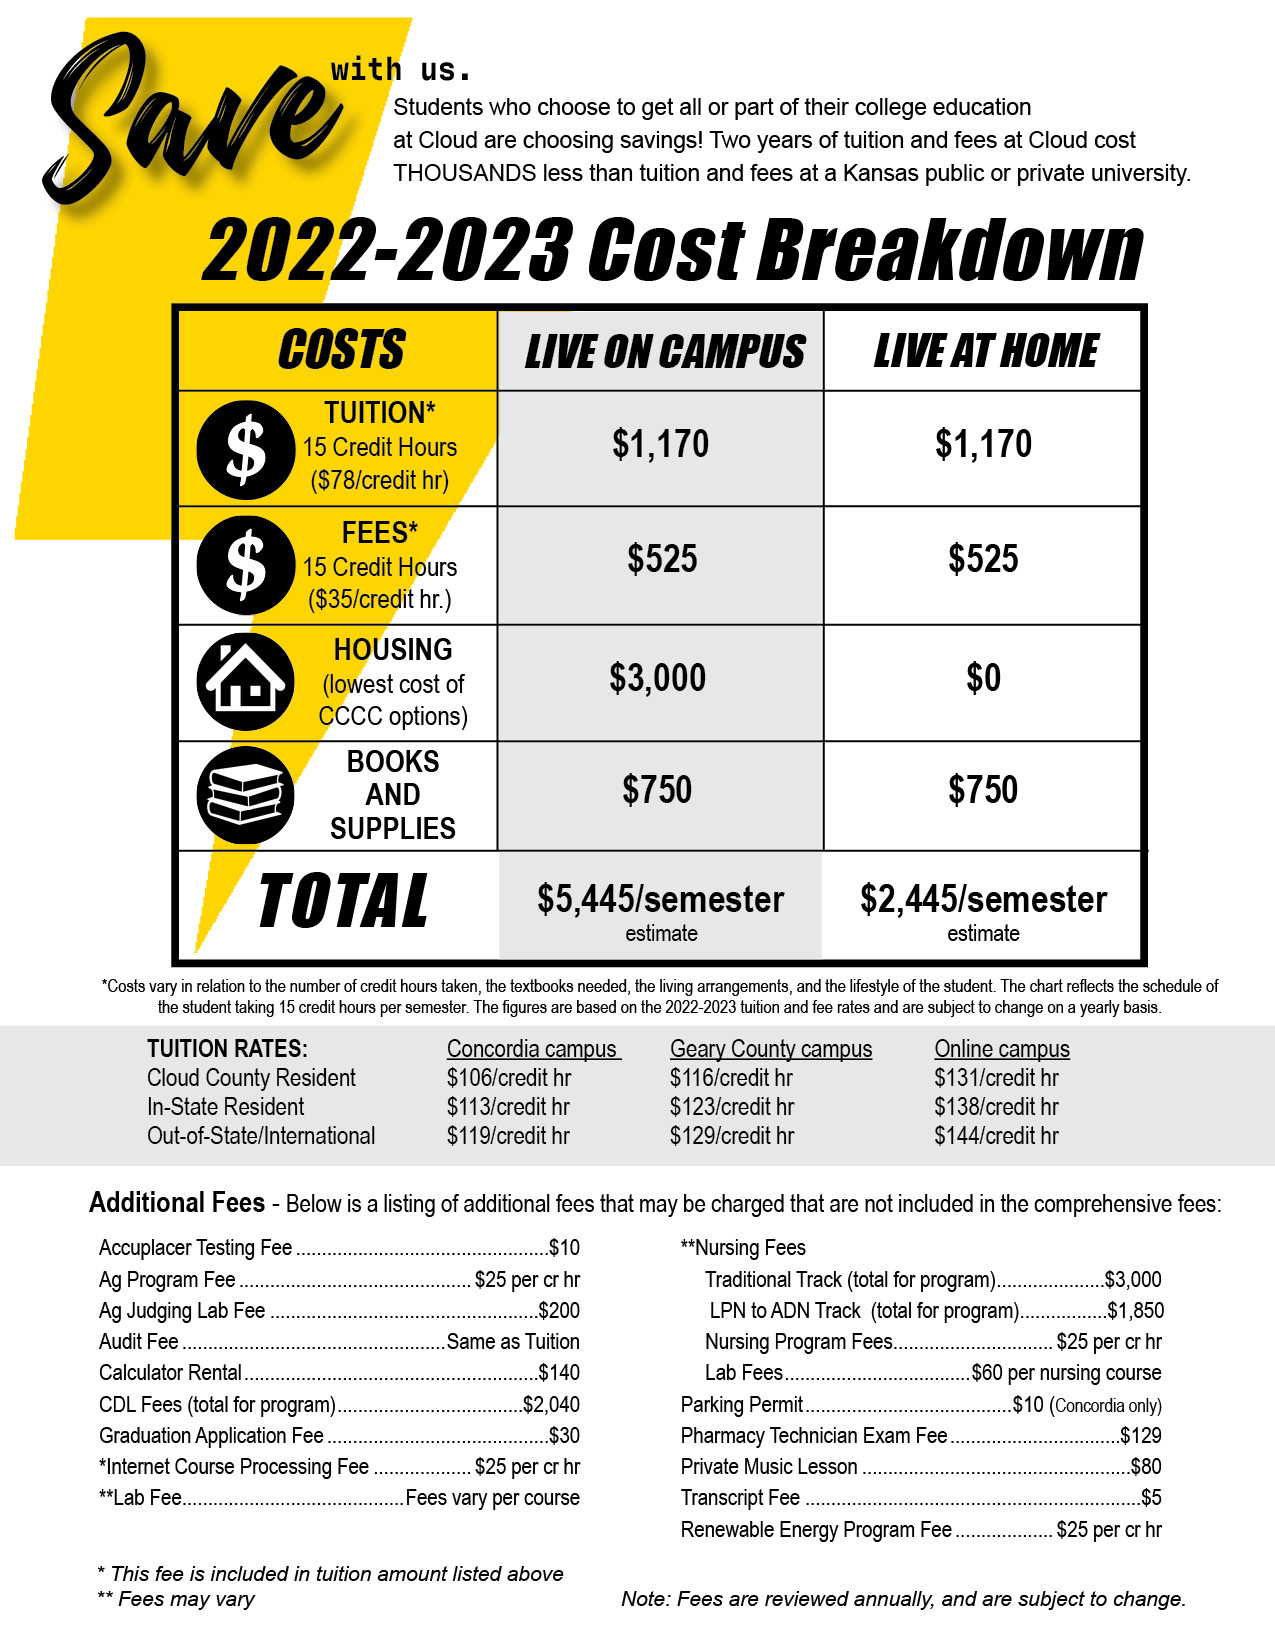 The 2022-2023 Cost Breakdown.